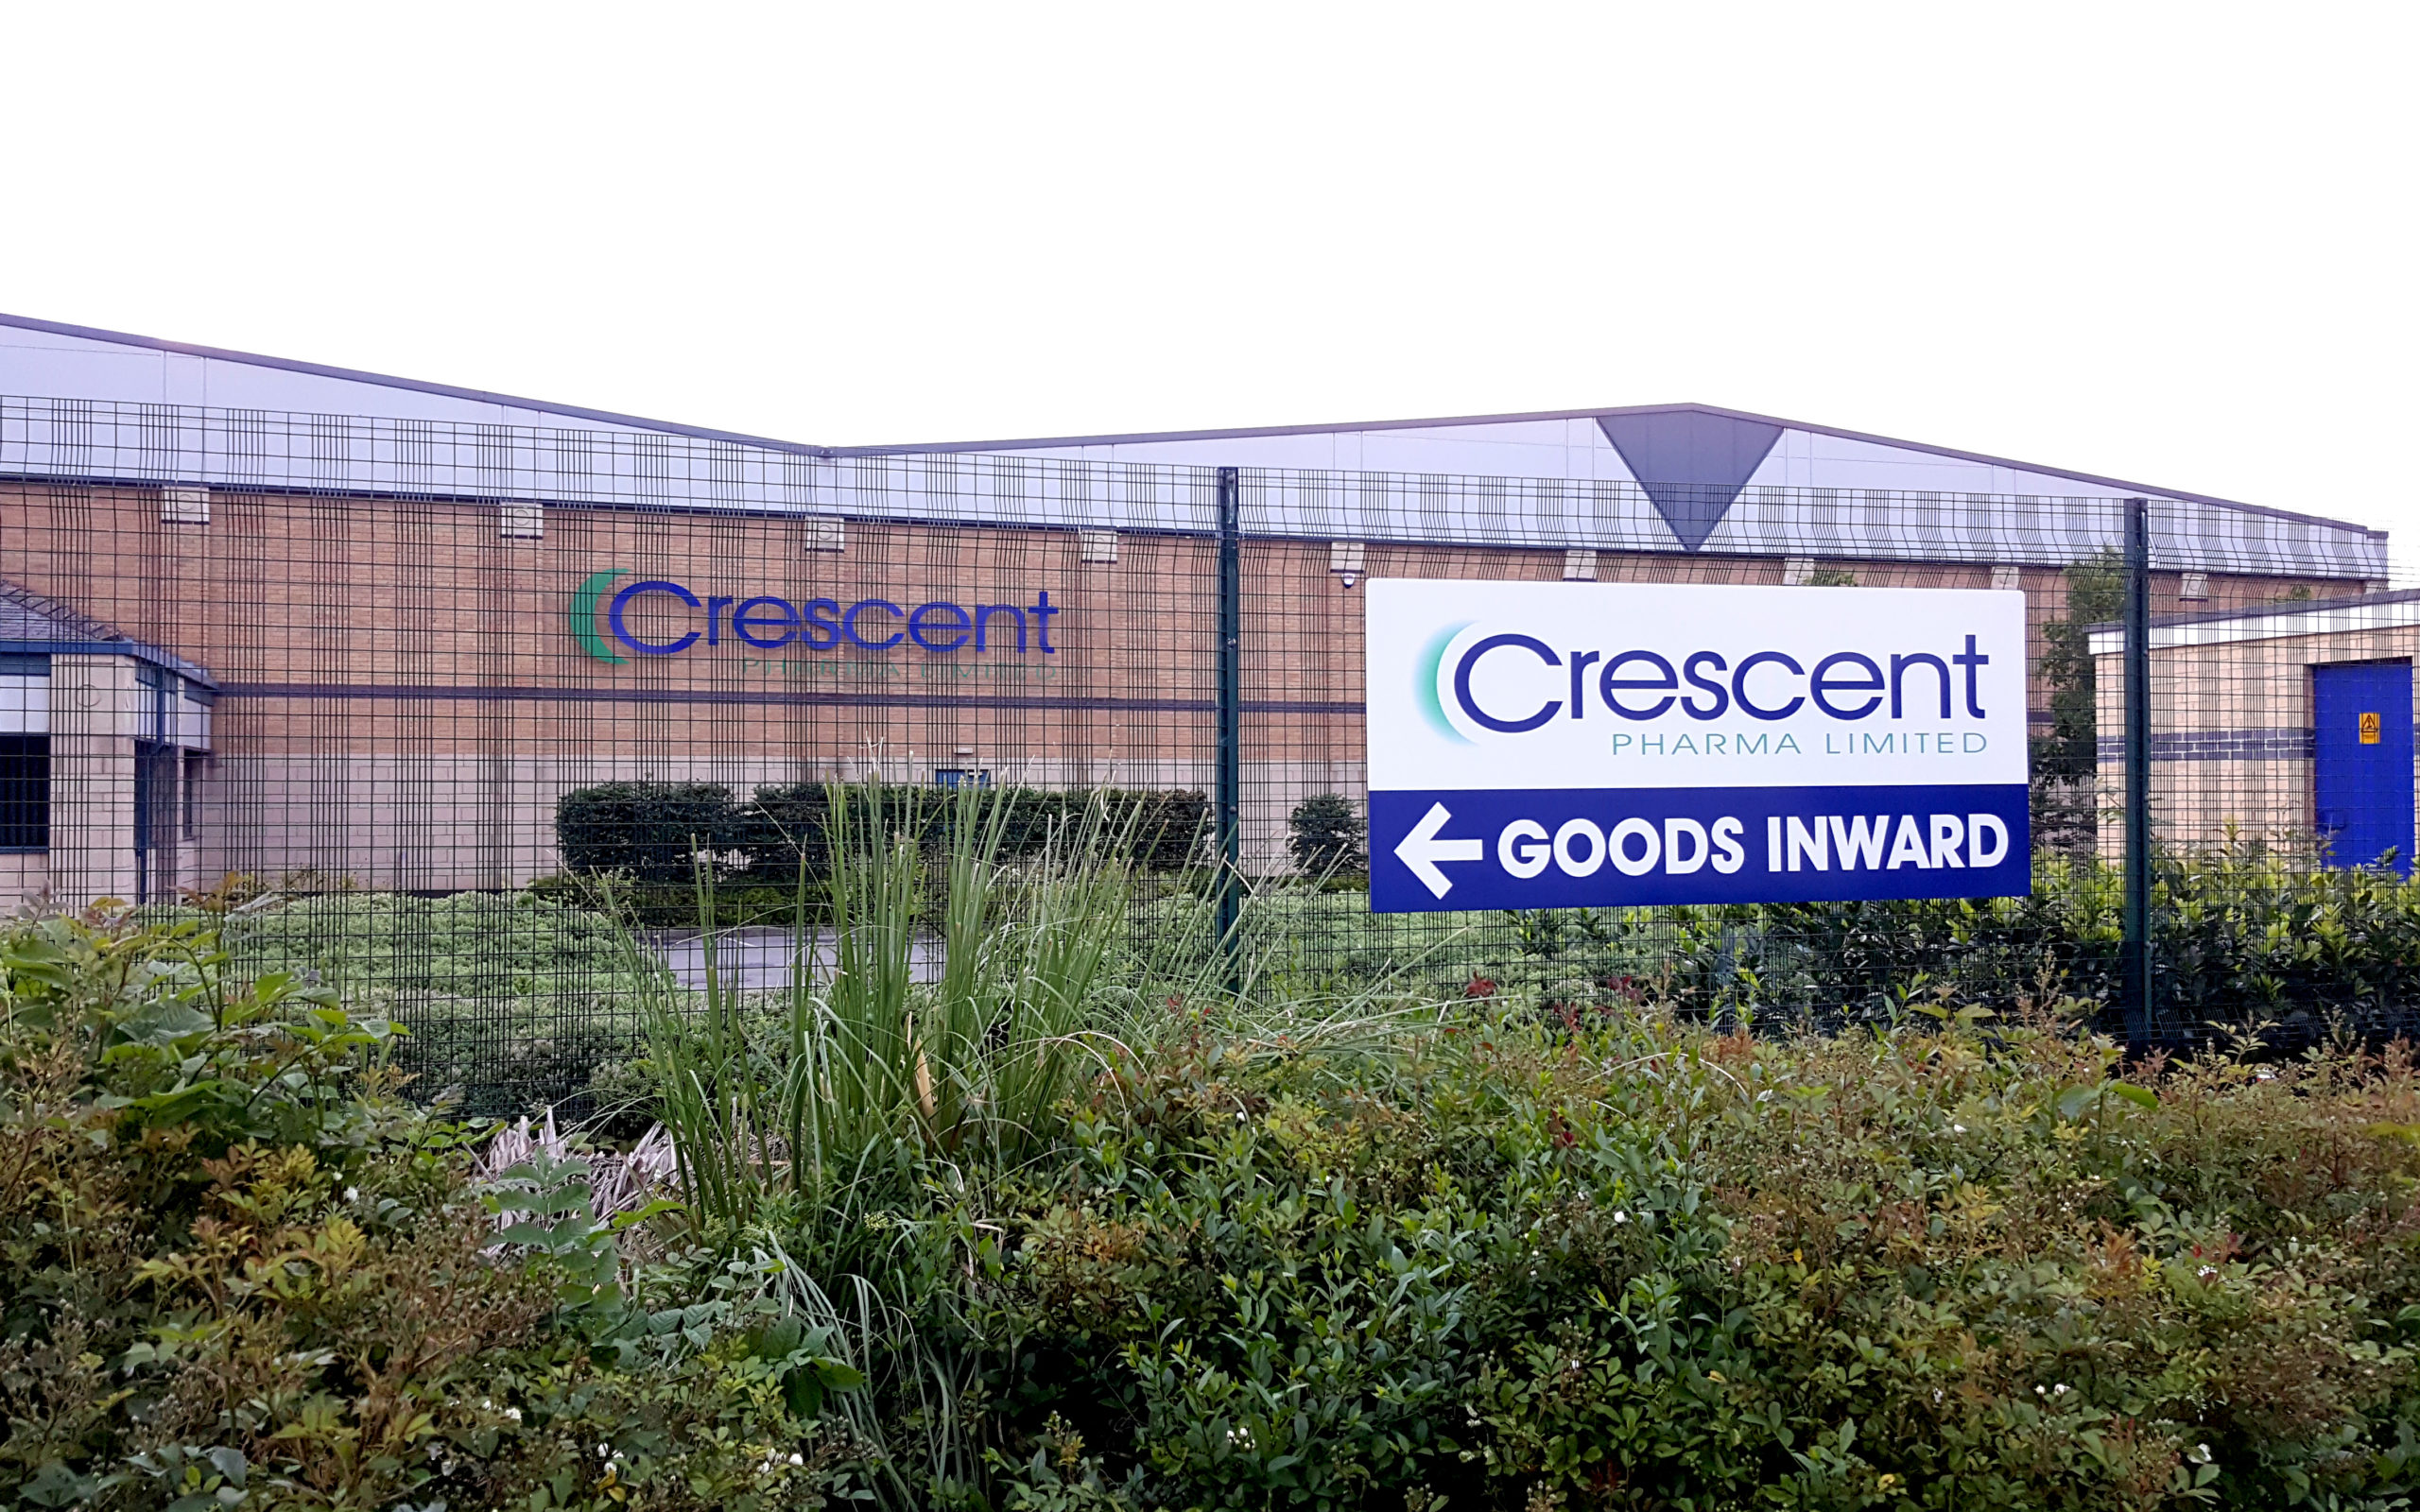 Crescent Pharma Barnsley Warehouse, Generic pharmaceuticals UK, UK Manufactured pharmaceuticals